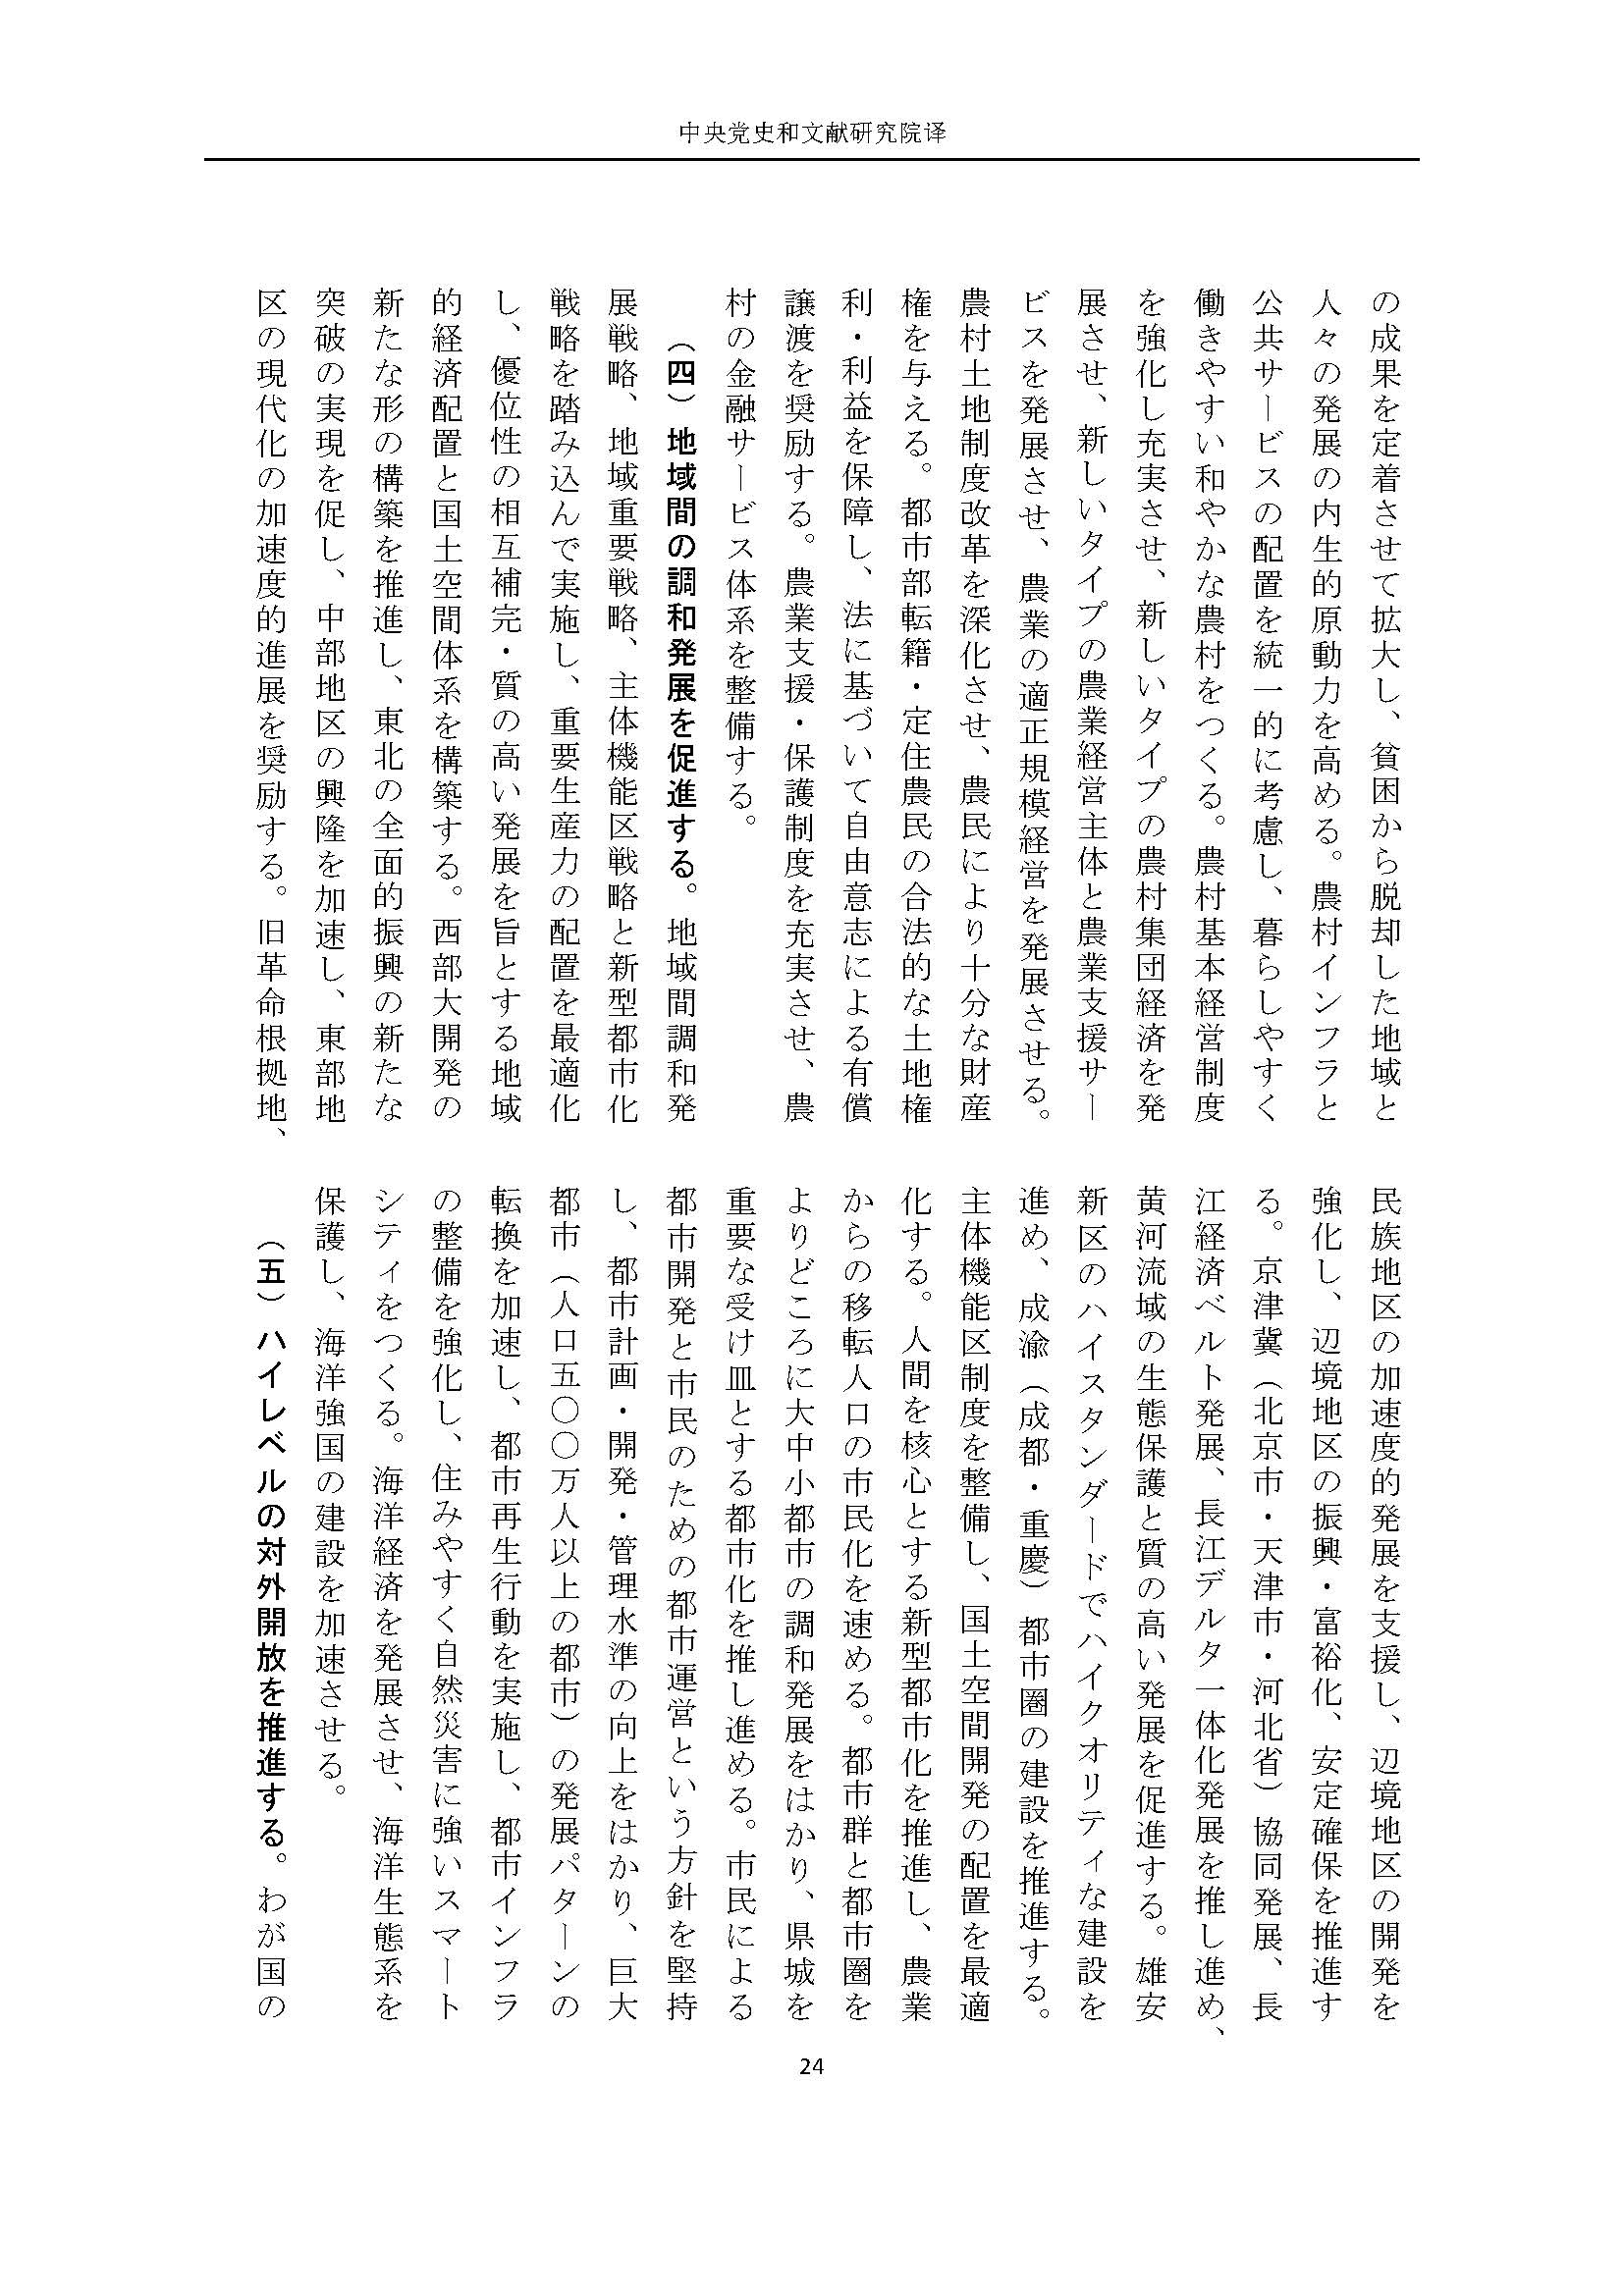 二十大报告（日文全文）_页面_25